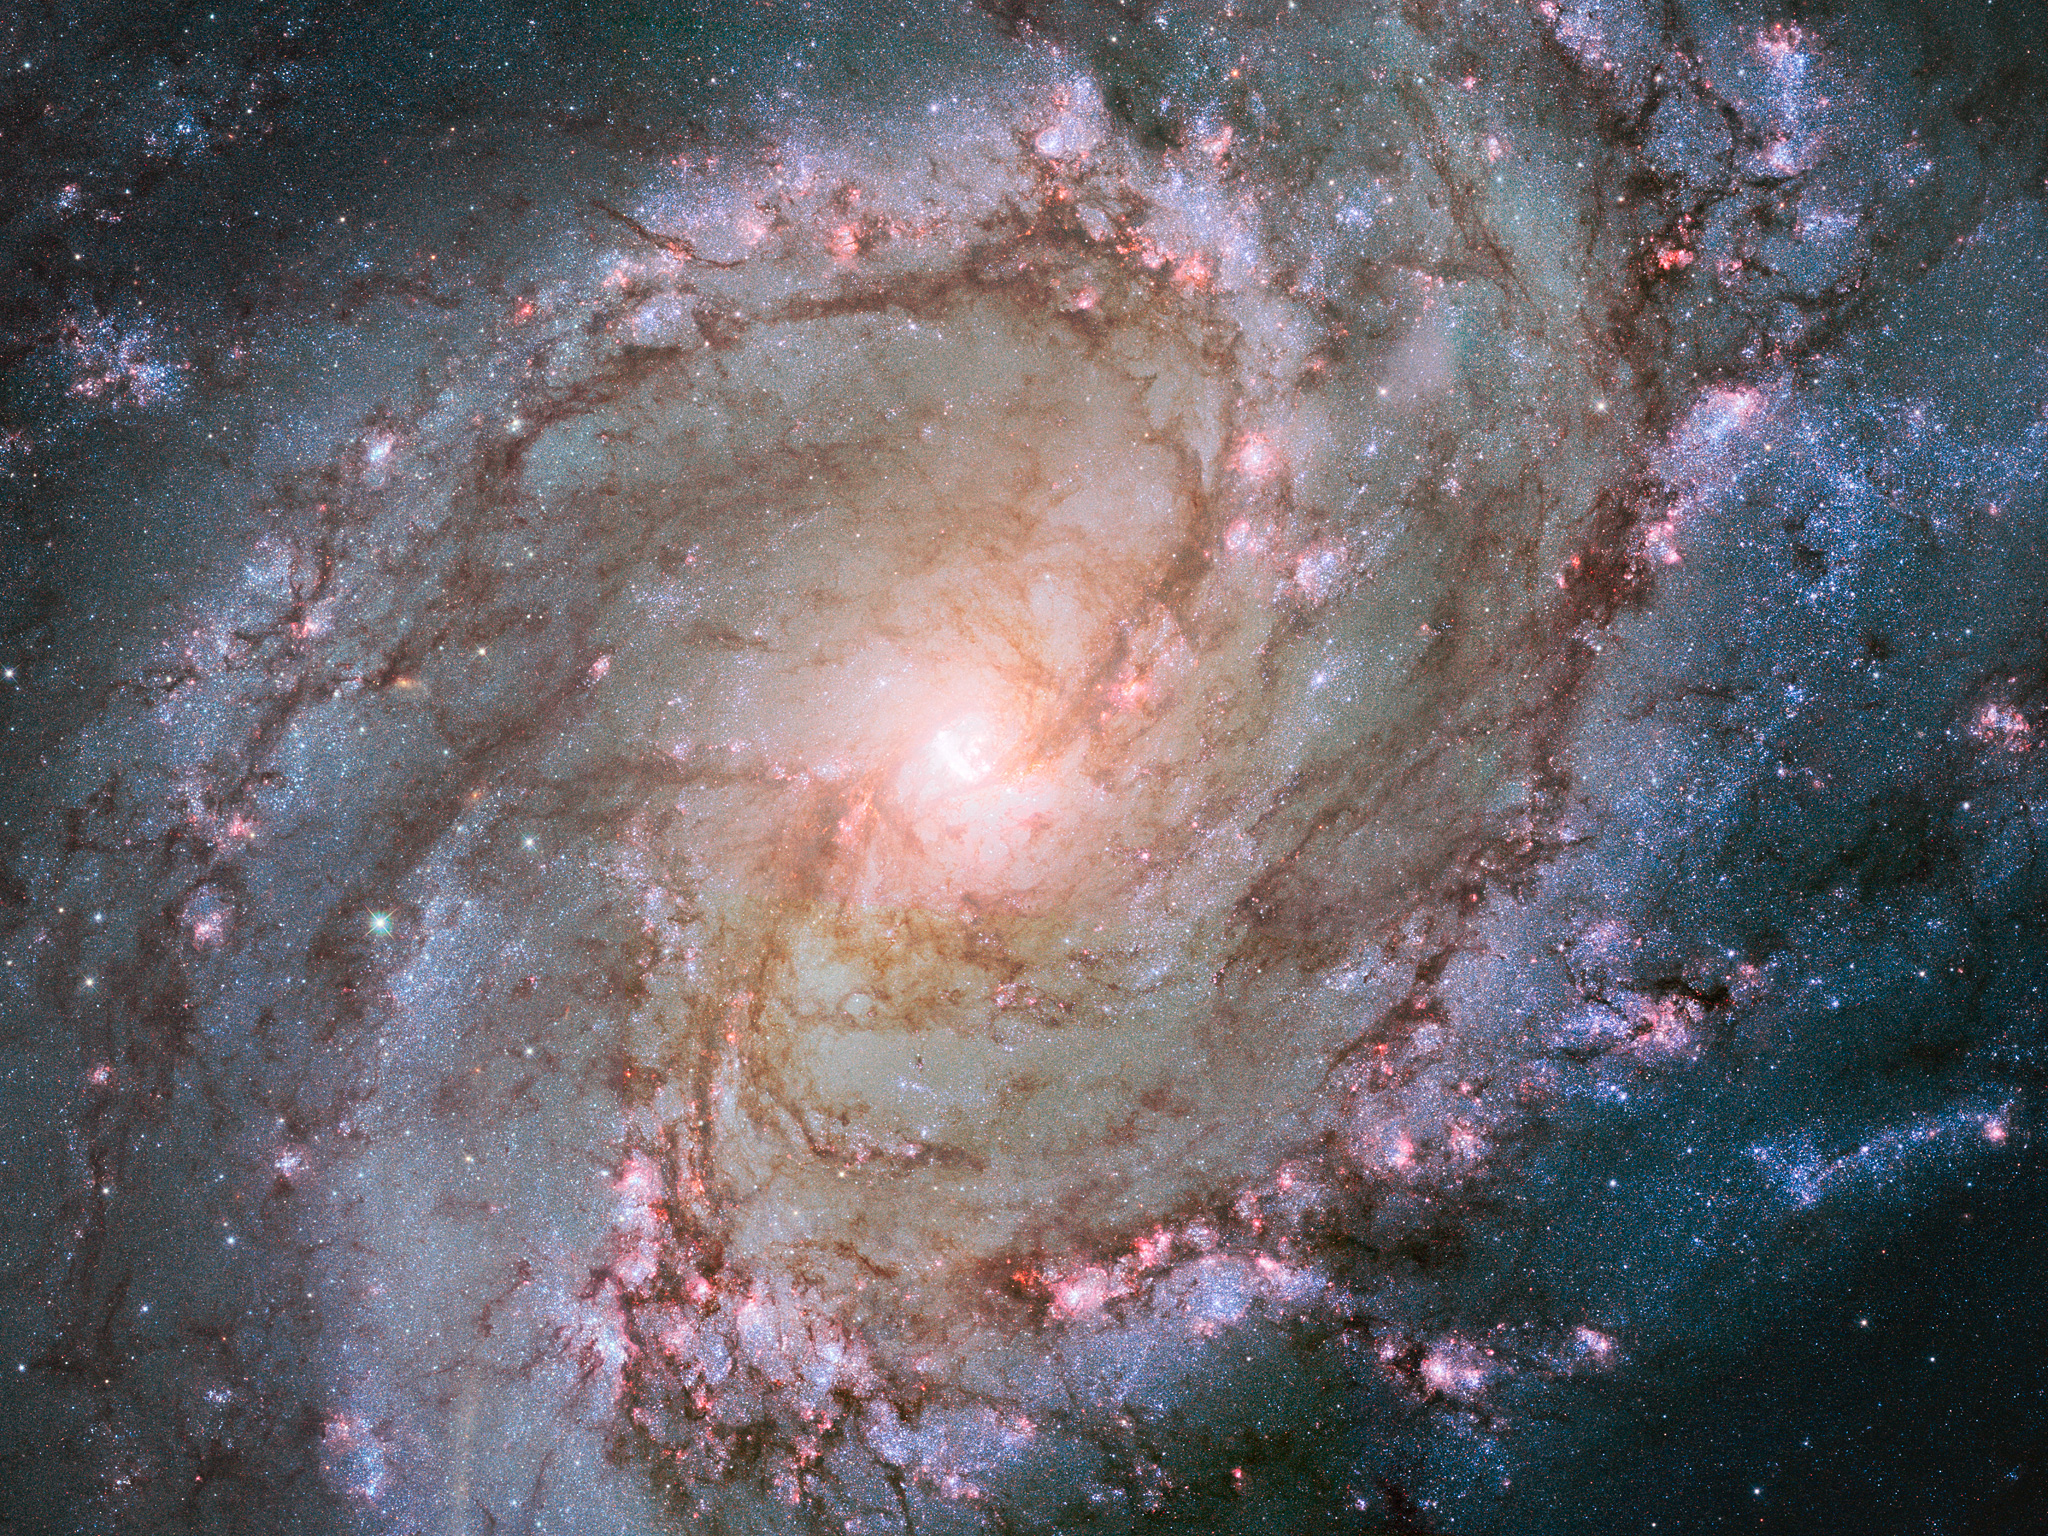 Na ilustracji: Zdjęcie z 2014 roku galaktyki z poprzeczką M83 (Galaktyka Południowy Wiatraczek) w zakresie optycznym (filtry w zakresie λ=0,336μm – 0,555μm) wykonane przez Teleskop Hubble’a. Źródło: NASA, ESA, and the Hubble Heritage Team (STScI/AURA) Acknowledgement: William Blair (Johns Hopkins University)